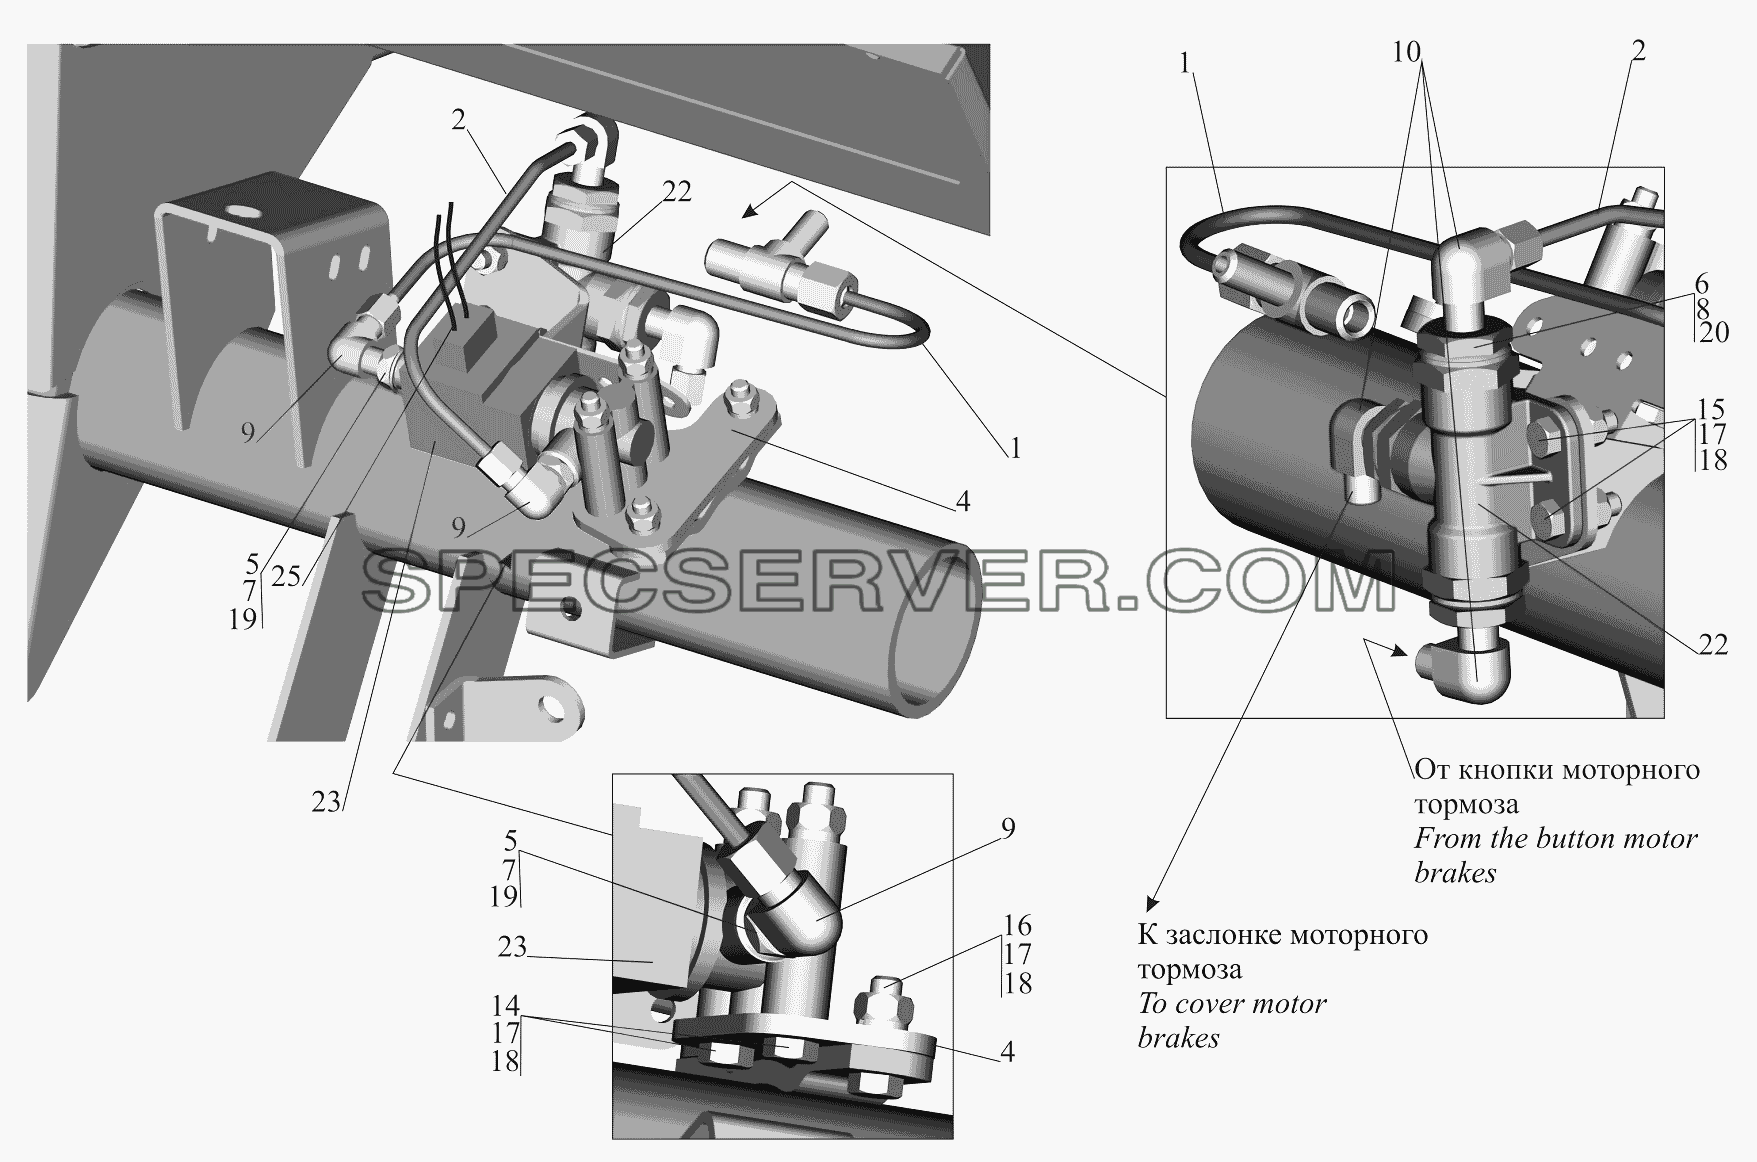 Привод выключения двигателя 551605-1115004 для МАЗ-651705 (список запасных частей)